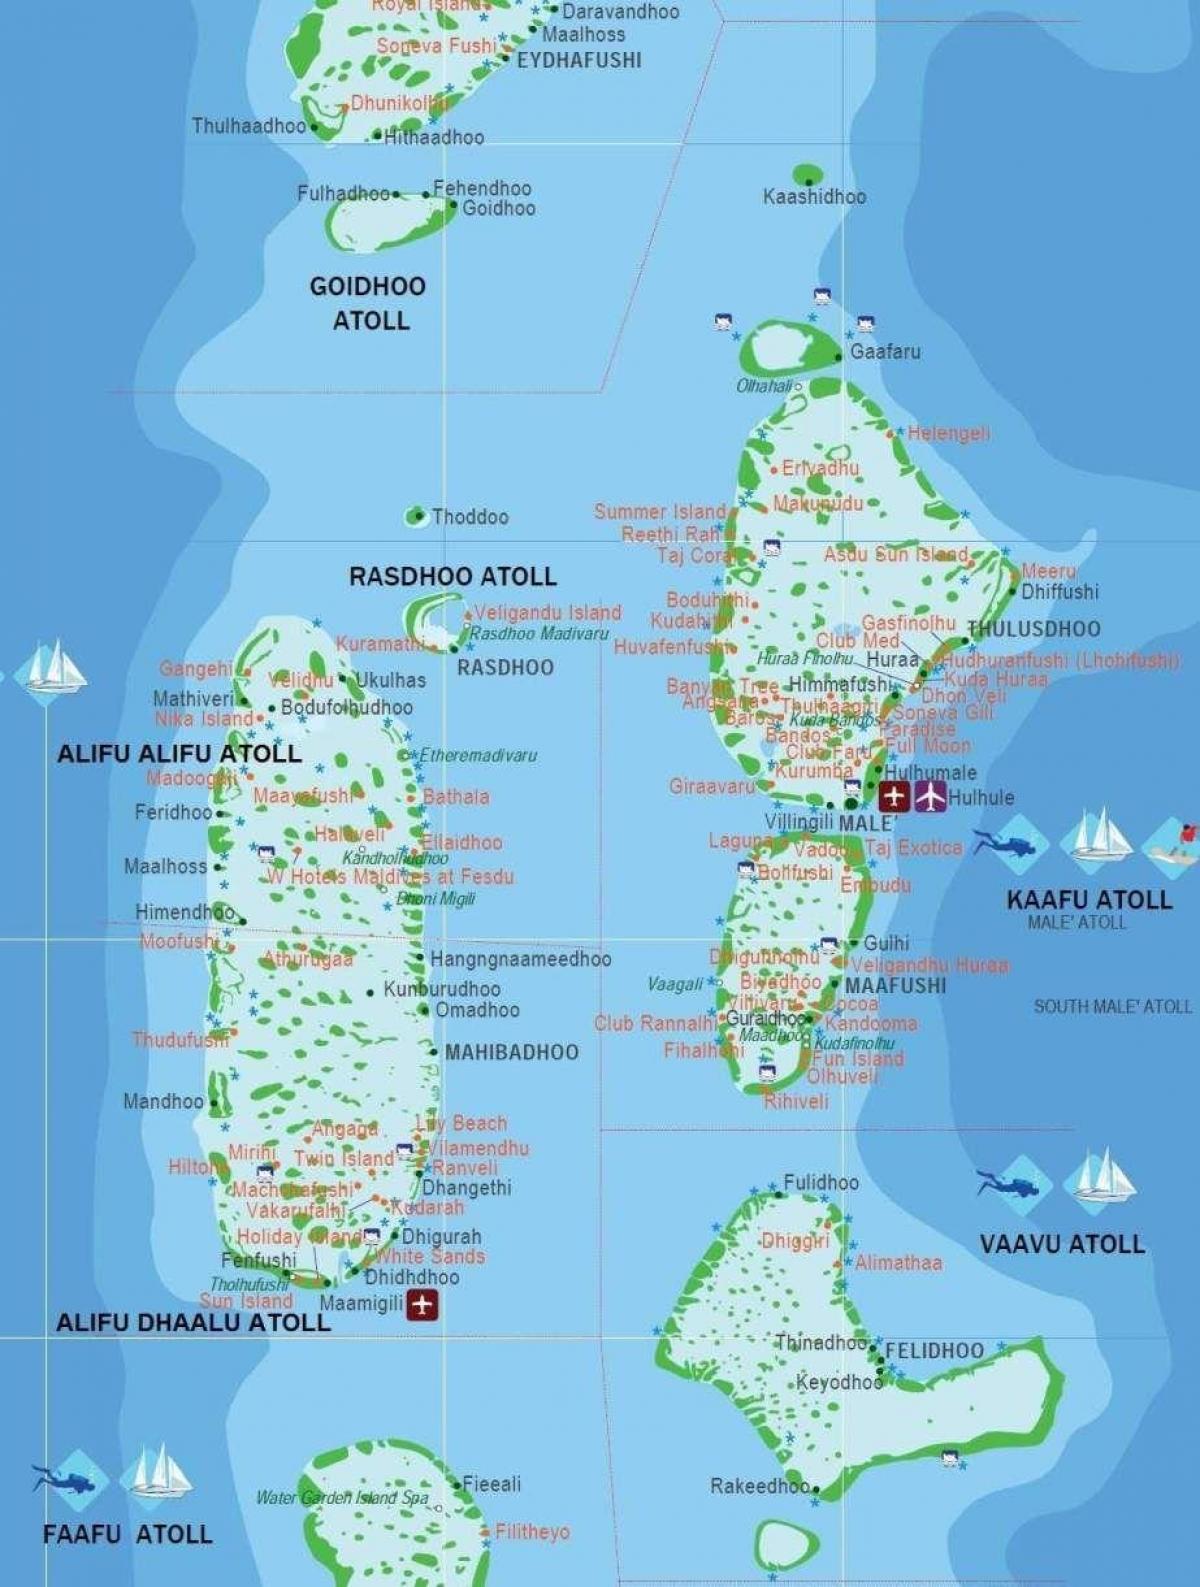 کا نقشہ مالدیپ کے سیاحوں کی